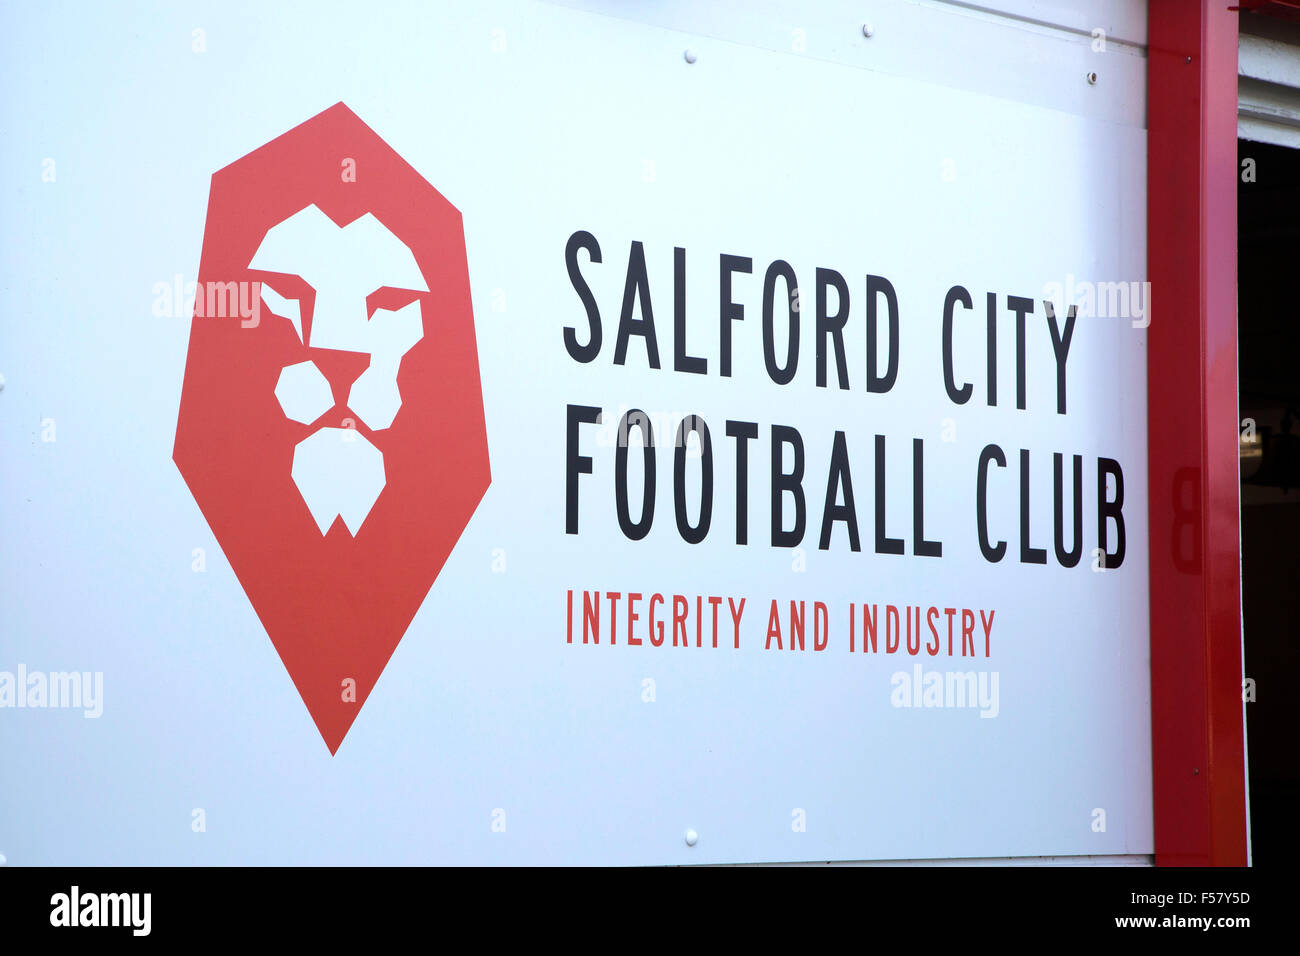 Salford Stadt-Fußball-Club in Manchester-Mitglieder von der Northern Premier League Premier Division in England Stockfoto